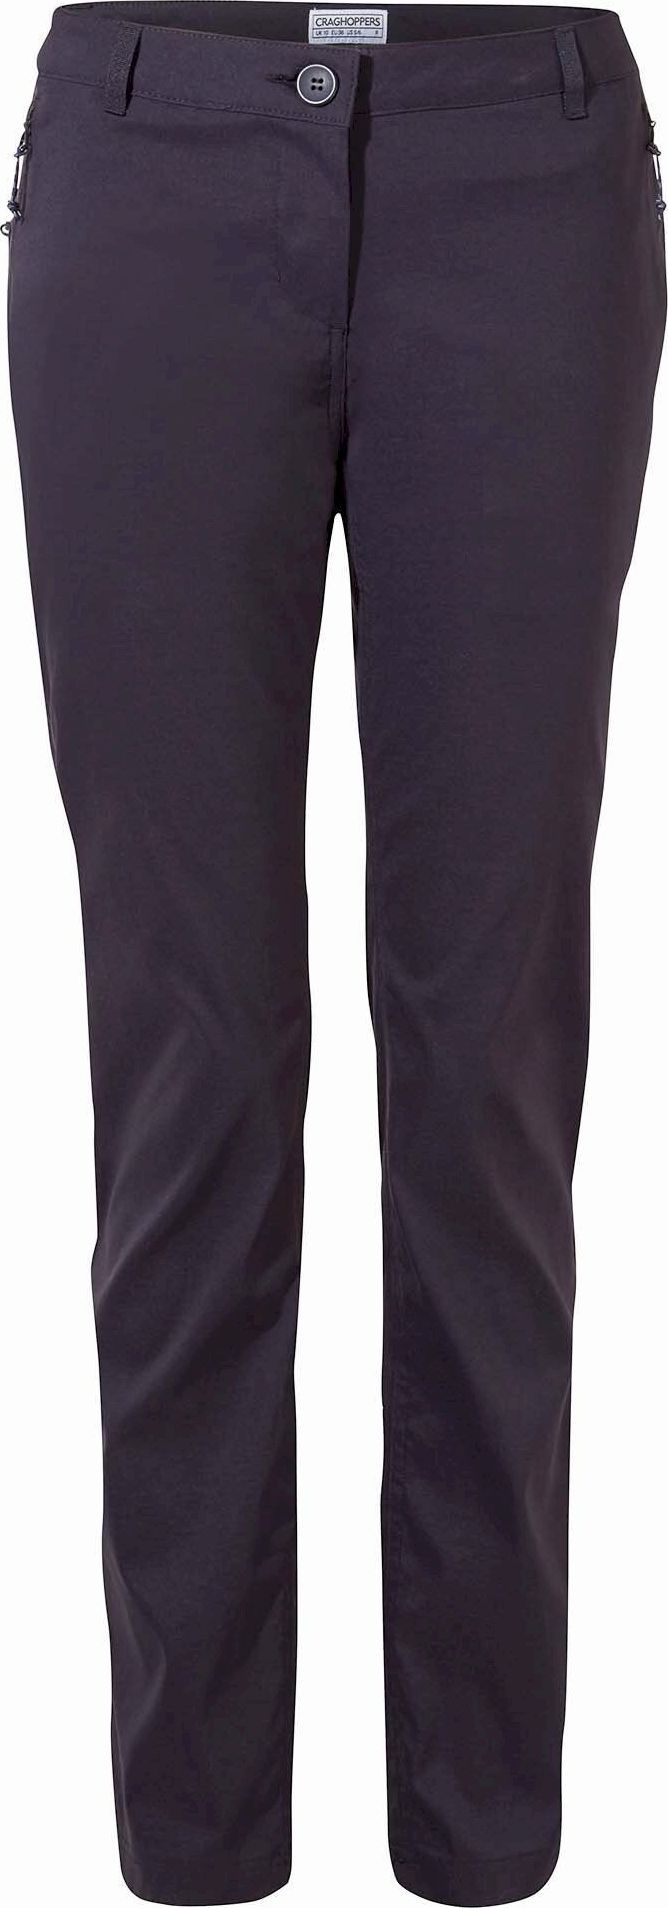 Women's Kiwi Pro II Trousers Dark Navy